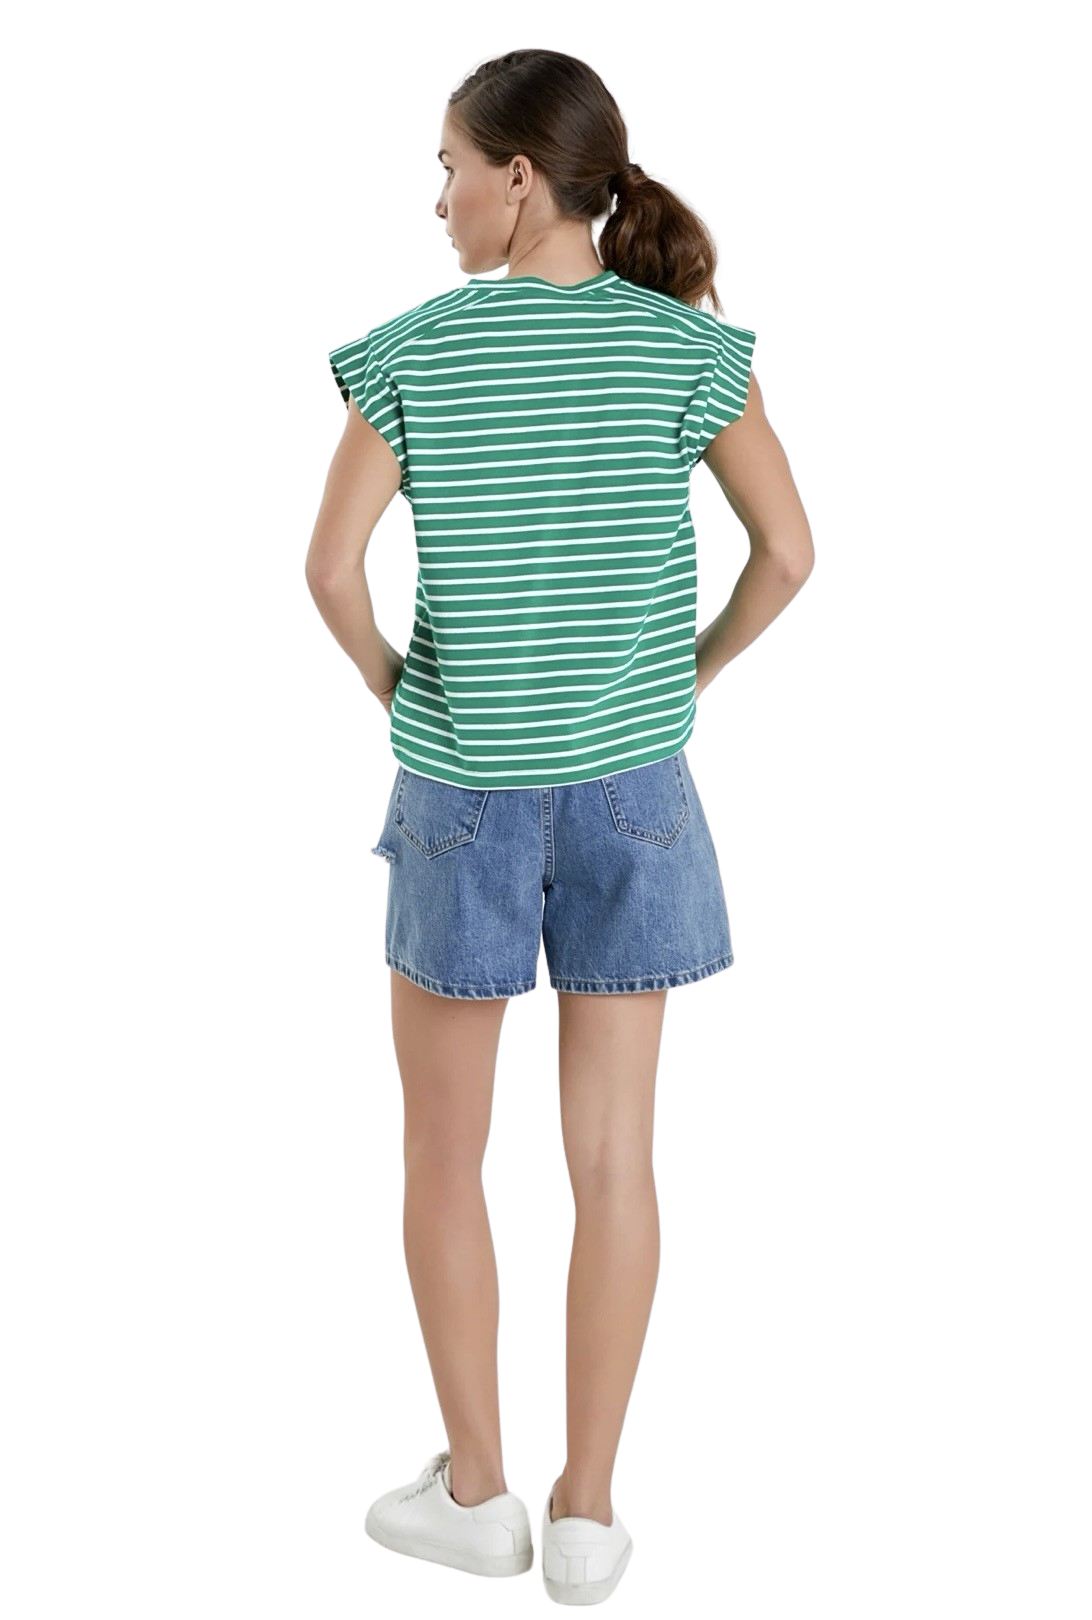 Apparel- English Factory Stripe Rib Cotton T-Shirt